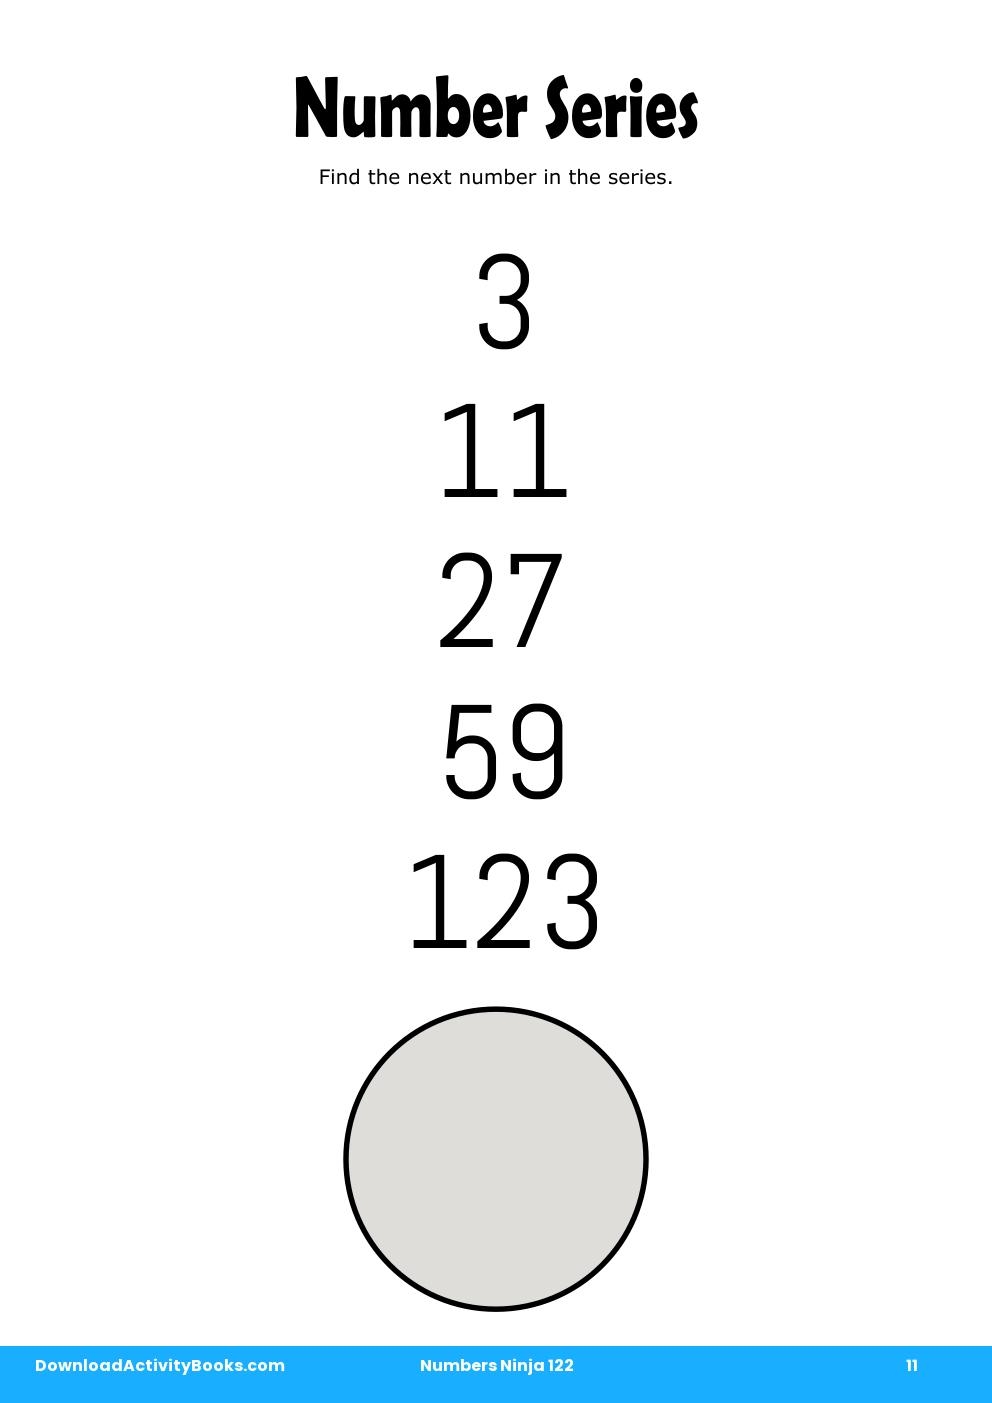 Number Series in Numbers Ninja 122